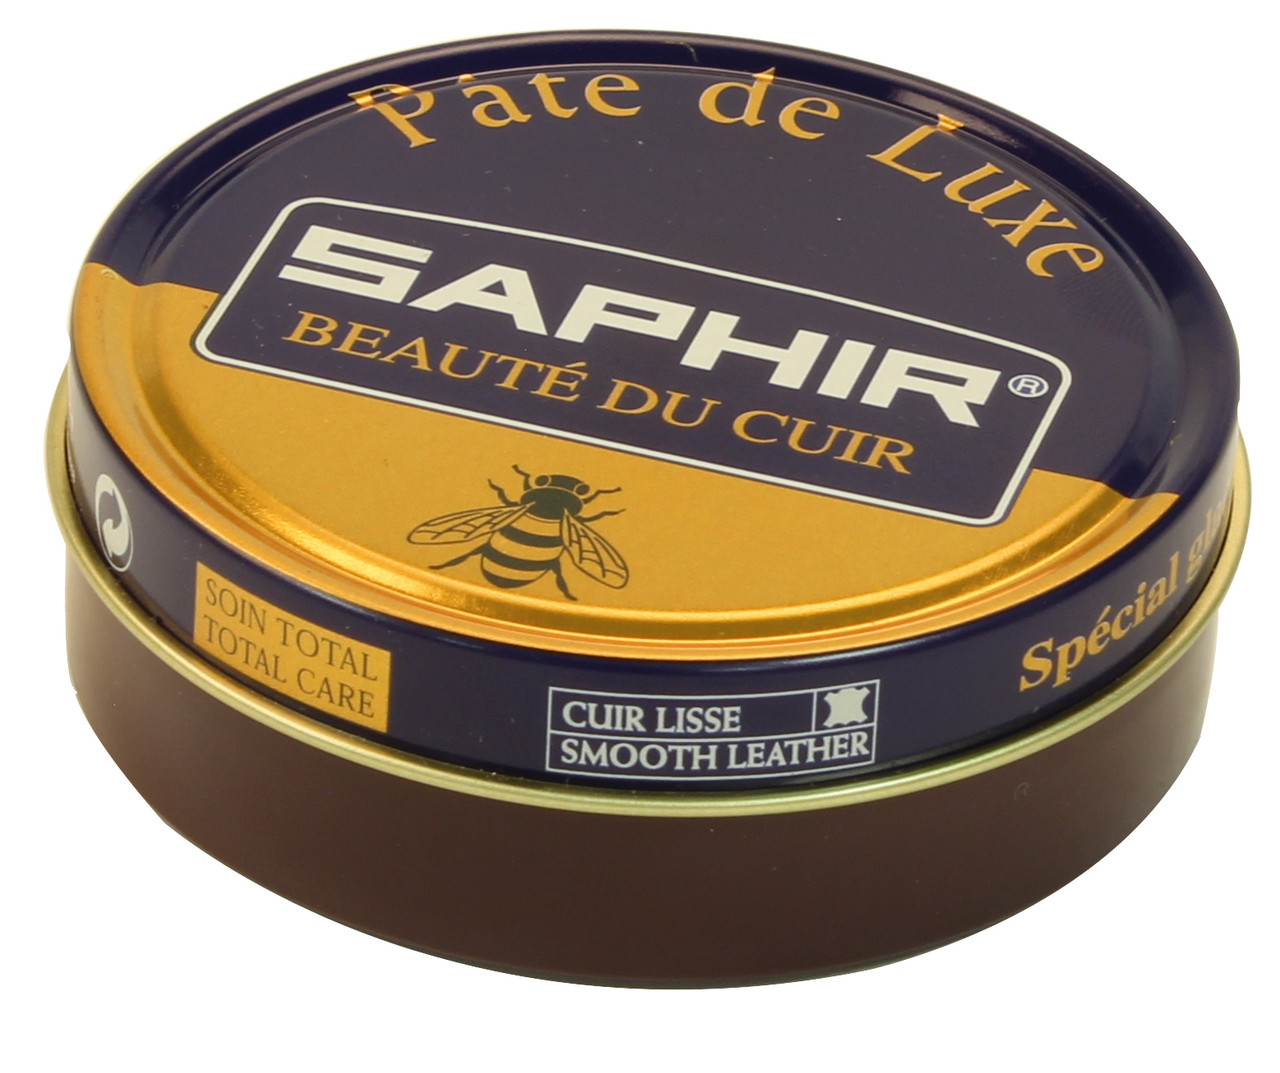 Saphir Beaute Du Cuir - Paste